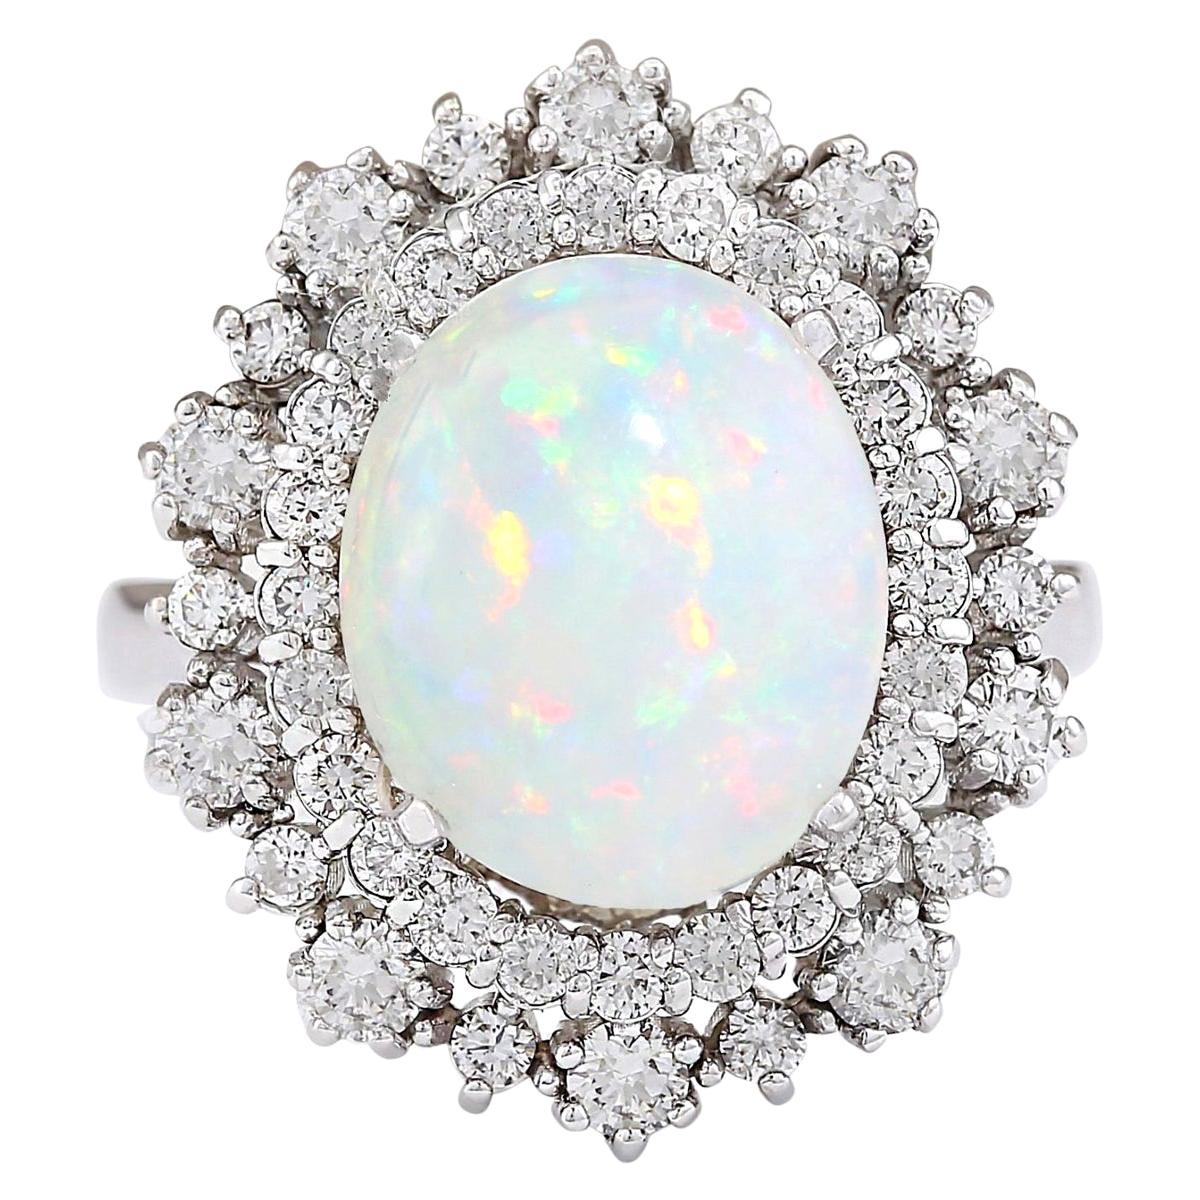 Natural Opal 14 Karat White Gold Diamond Ring